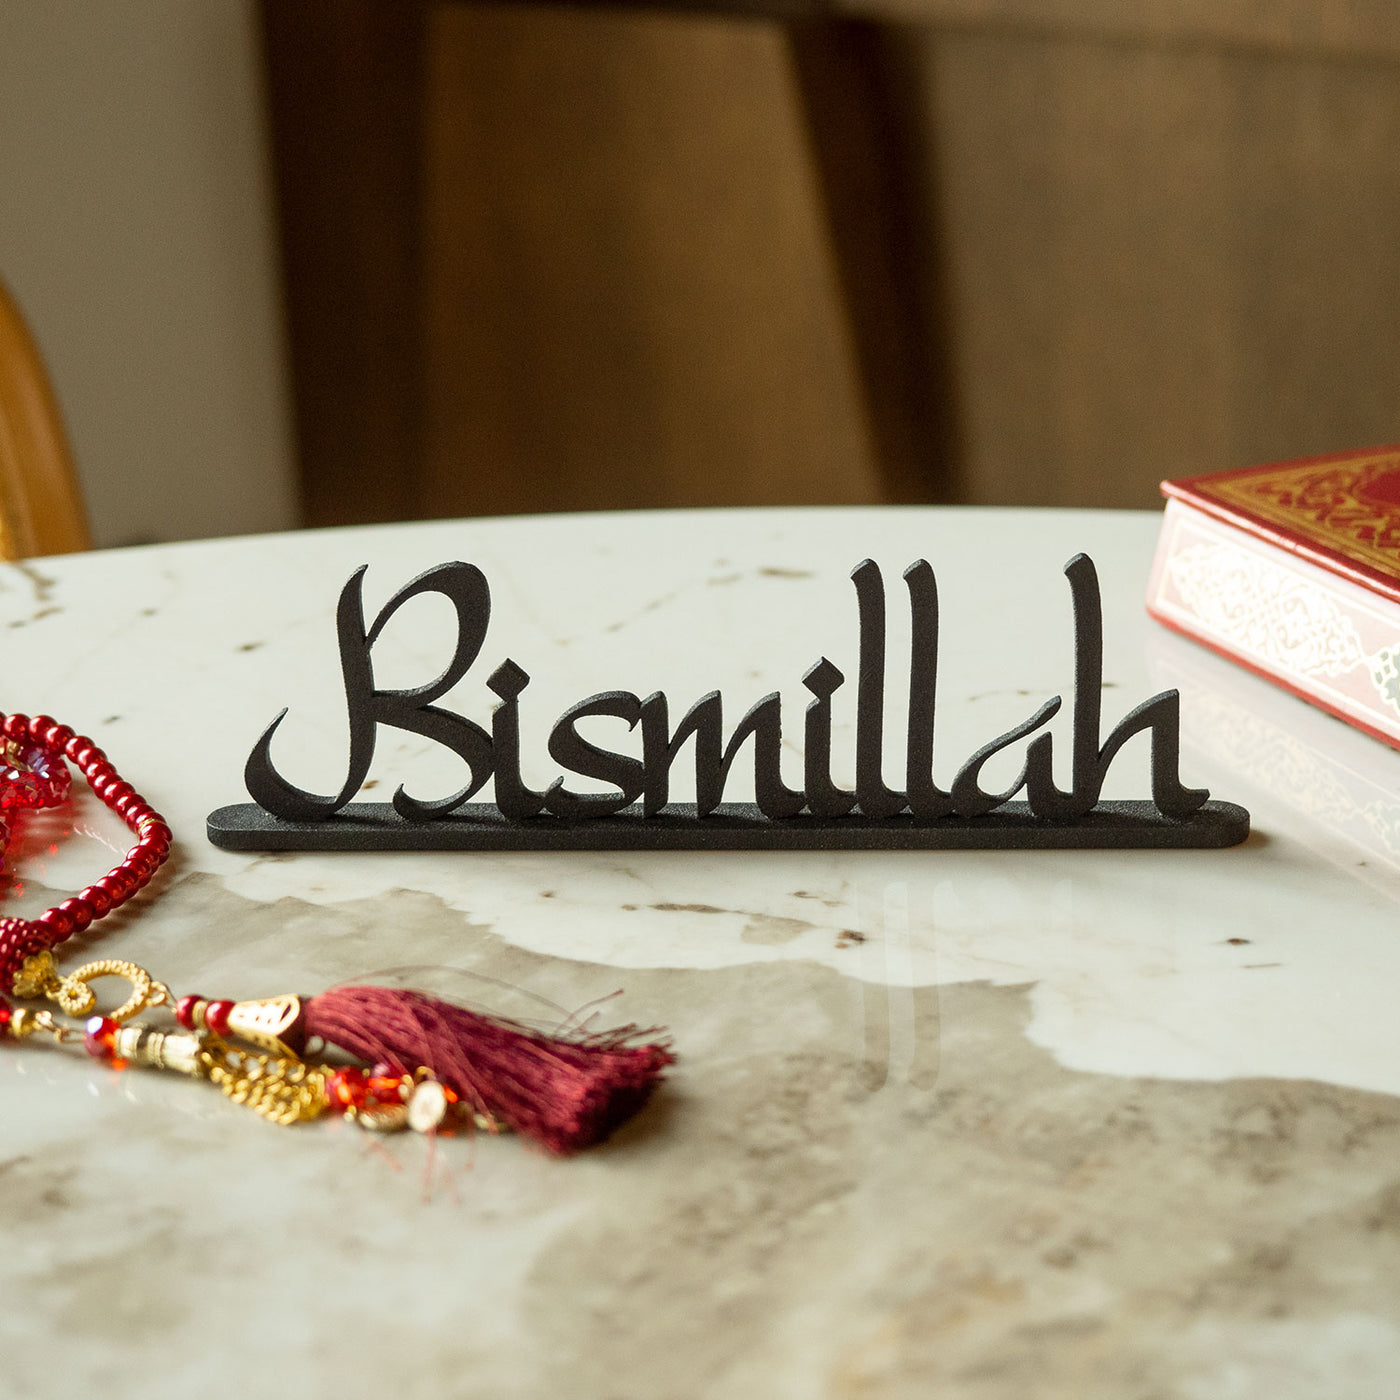 Bismillah ve Alhamdulillah 2'li Set Metal Masaüstü Dekor - WAMH081